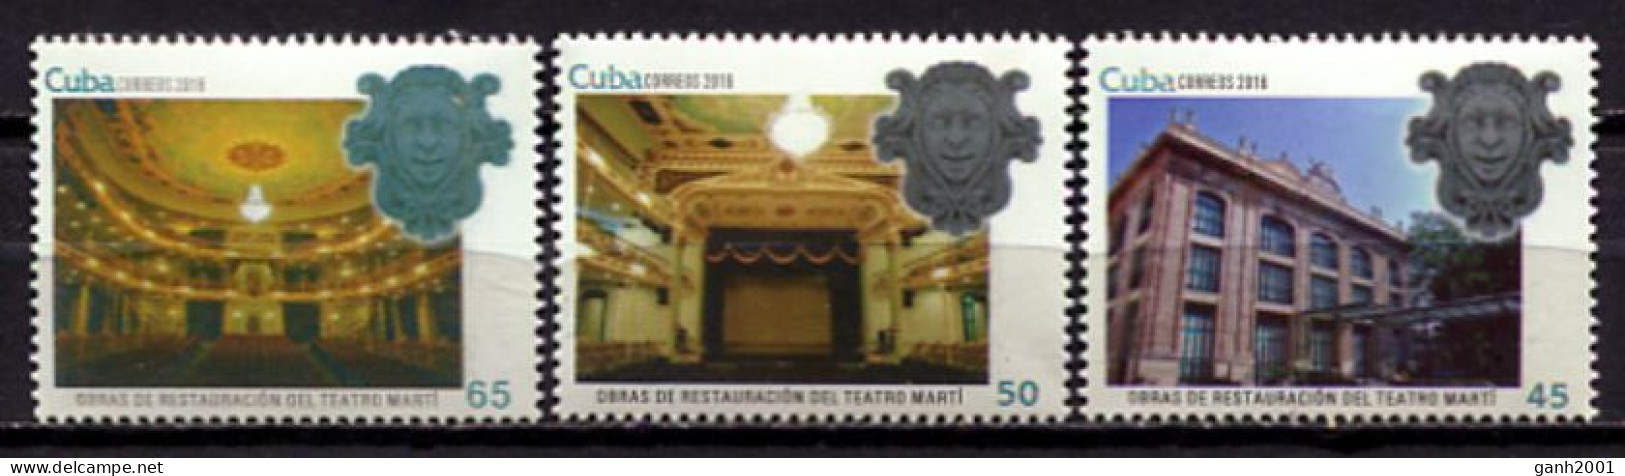 Cuba 2016 / Theatre Jose Marti MNH Teatro Theater / Cu1627  5-20 - Théâtre